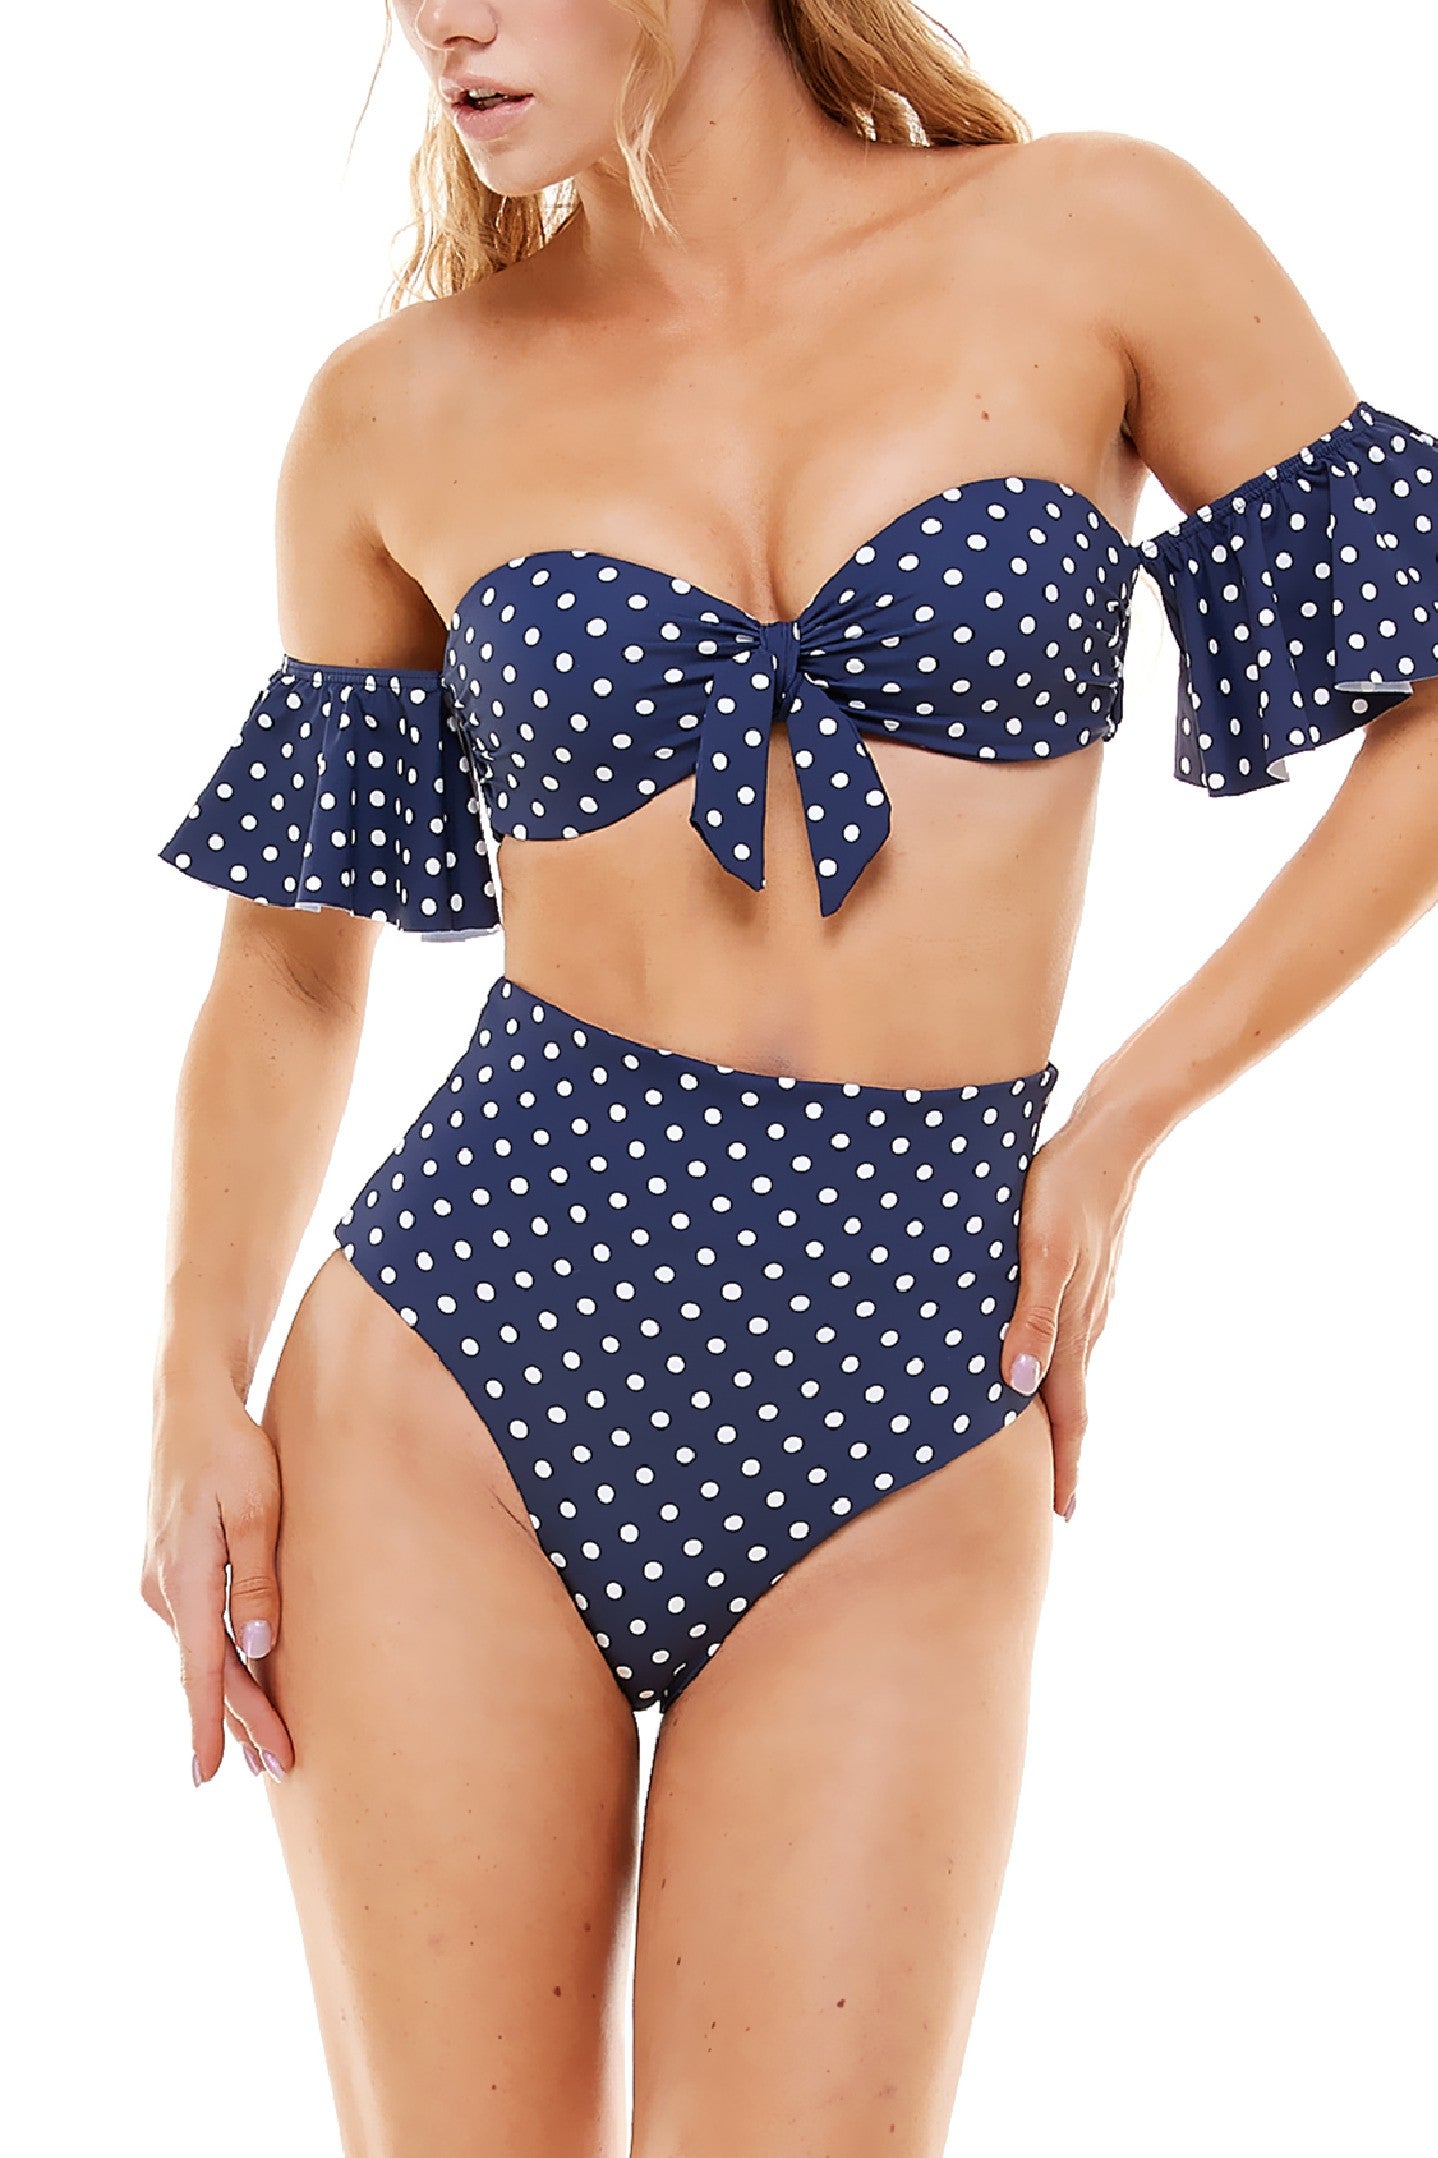 Freshia Ruffled High Waisted Polka Dot 3pc Bikini Set